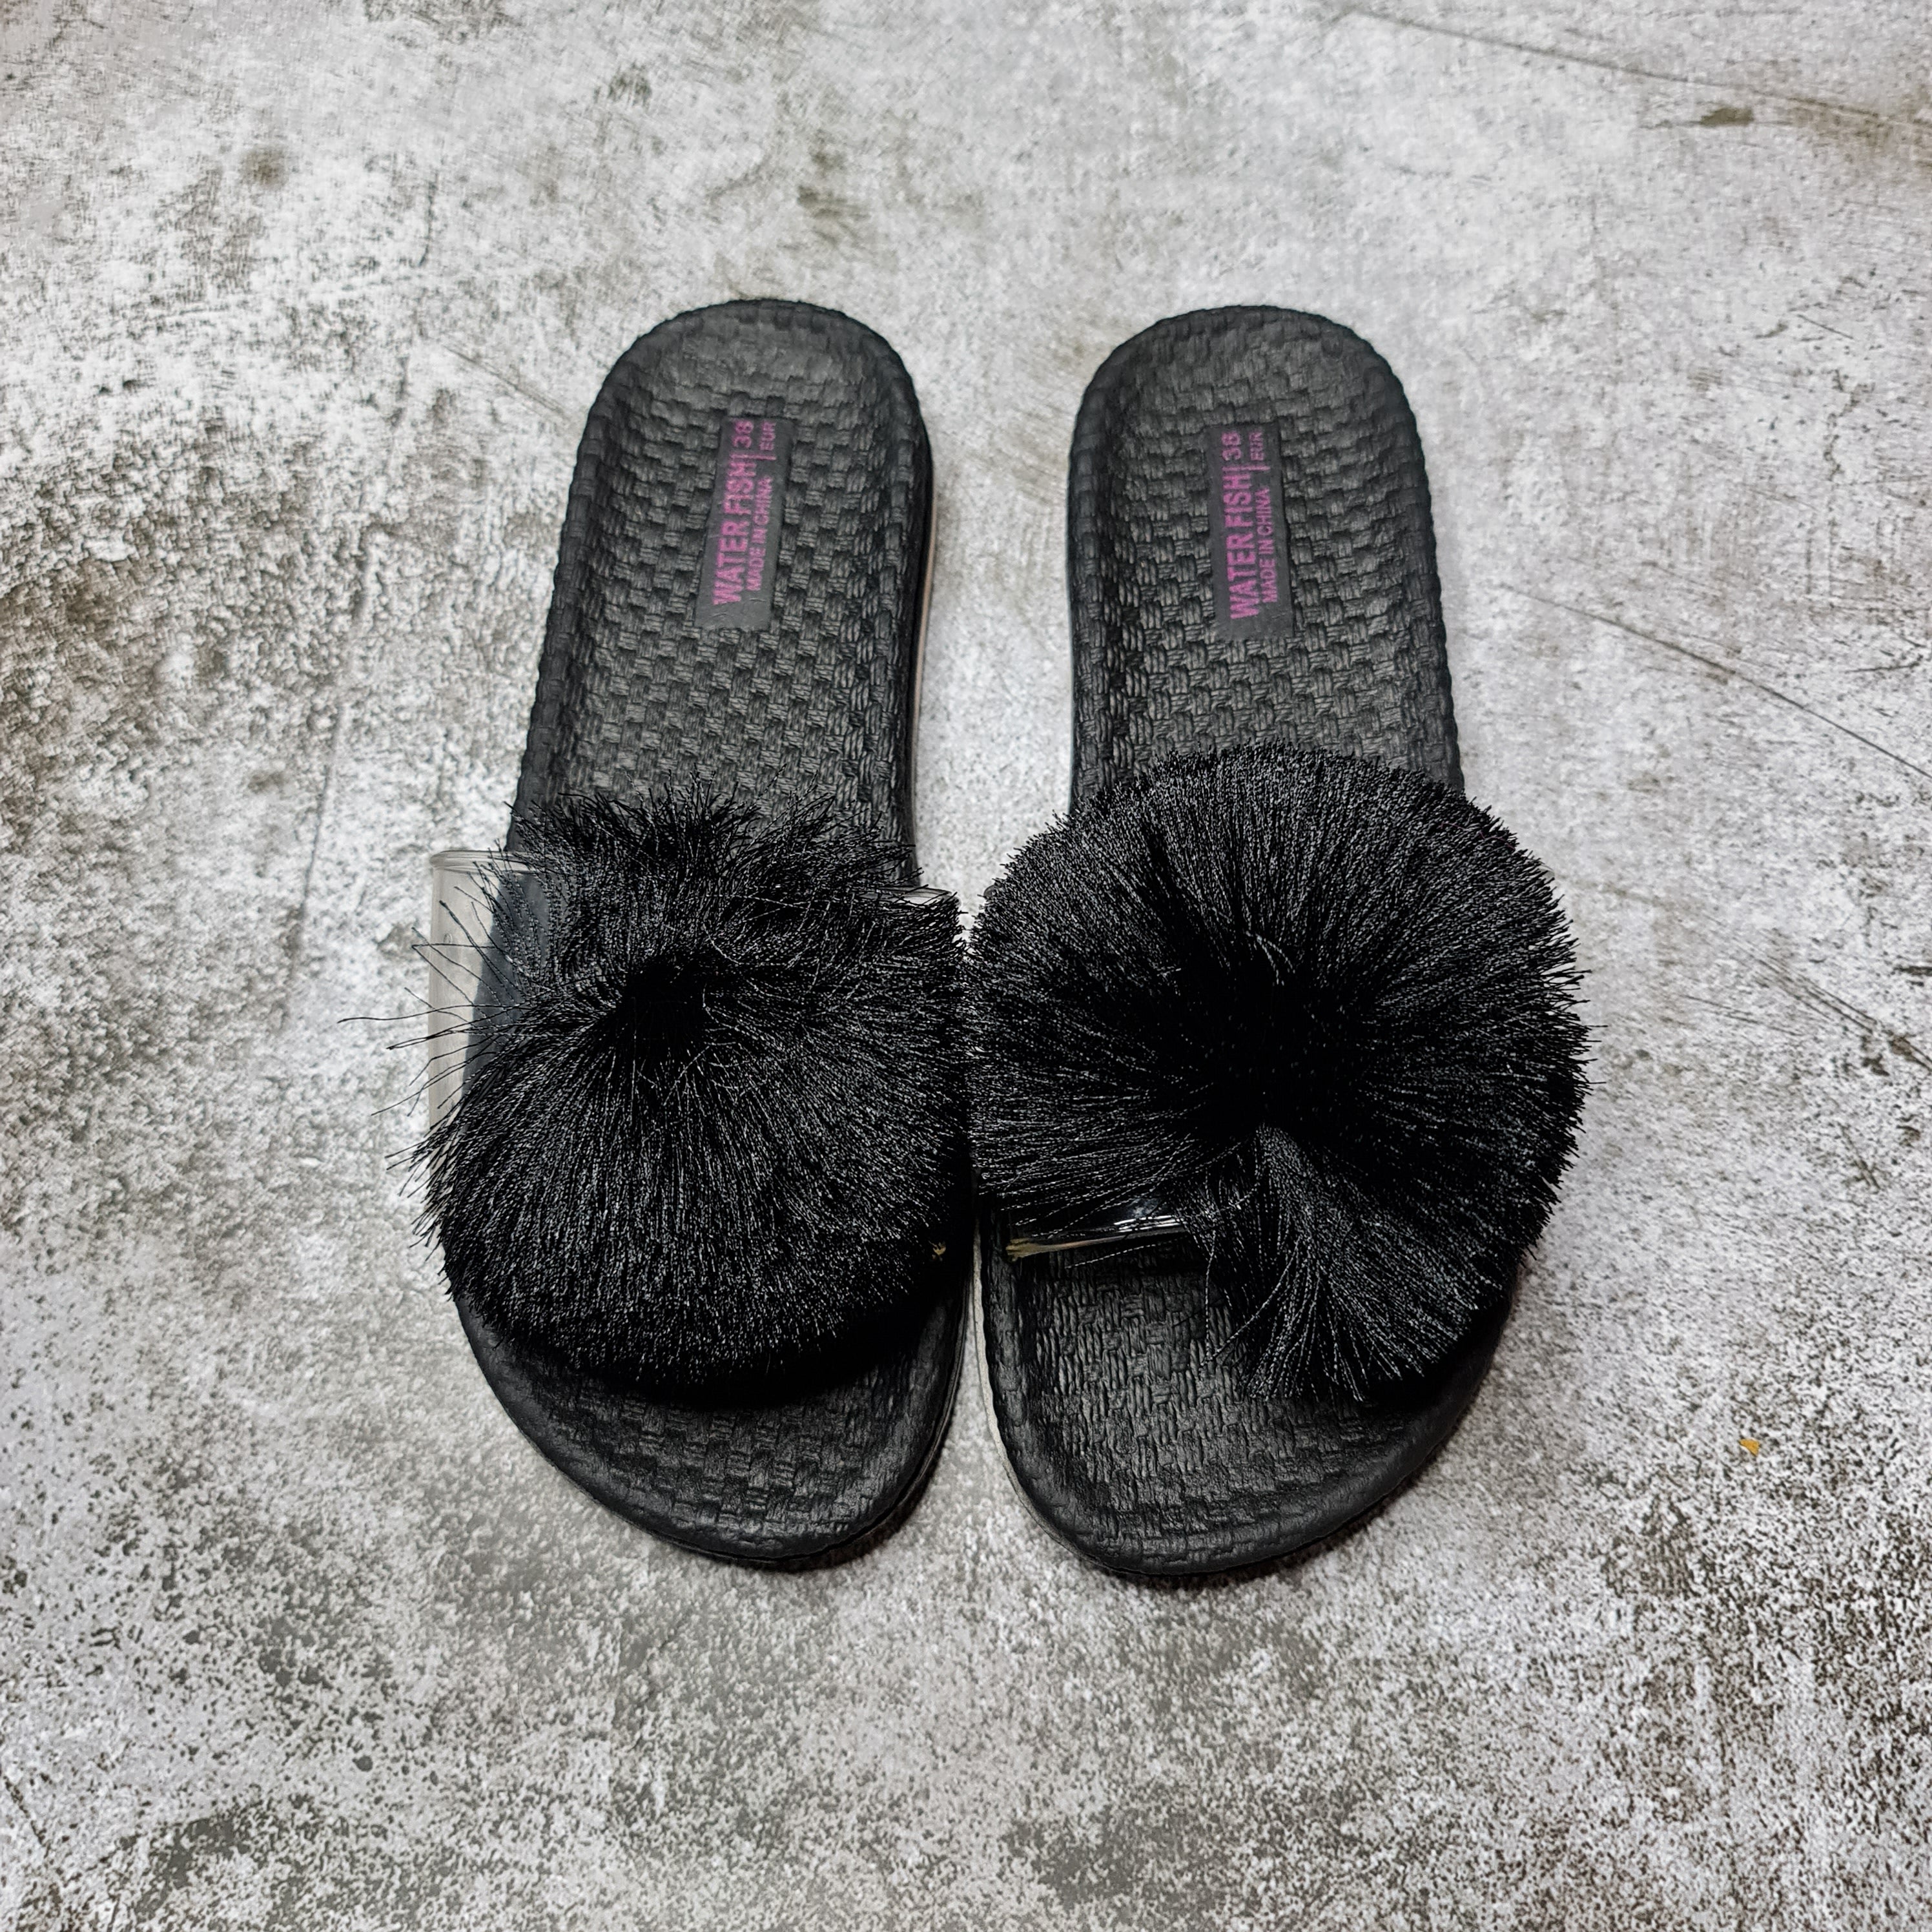 Poom Poom Slides - Maha fashions -  Women Casual Slippers